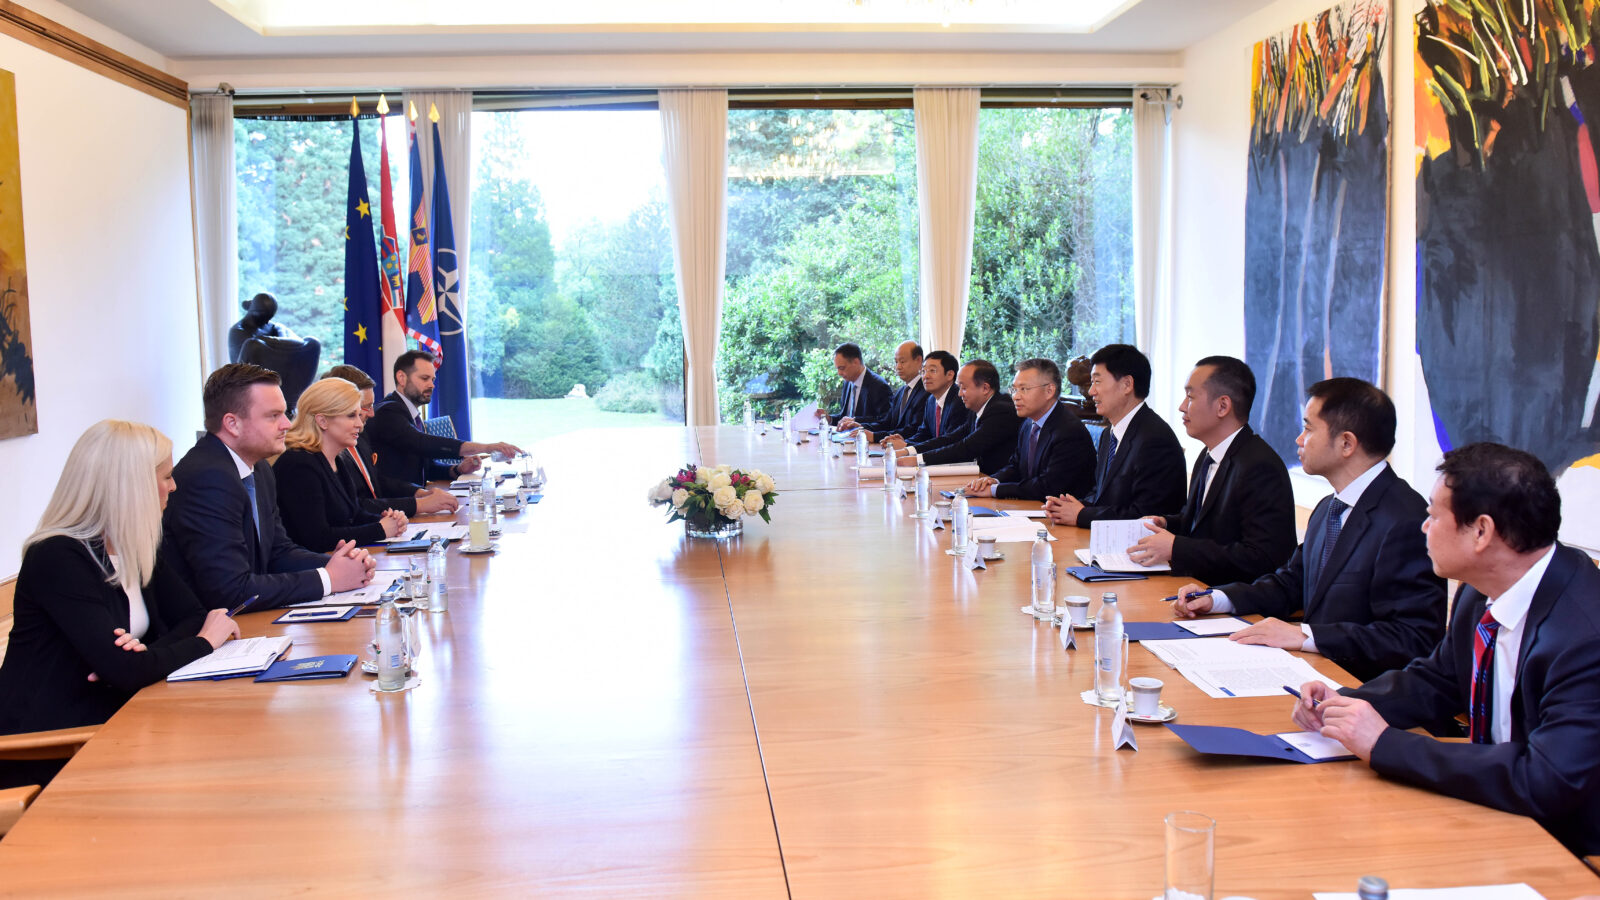 Susret izaslanstva kineske kompanije s hrvatskom predsjednicom na Pantovčaku, Foto: Ured predsjednic